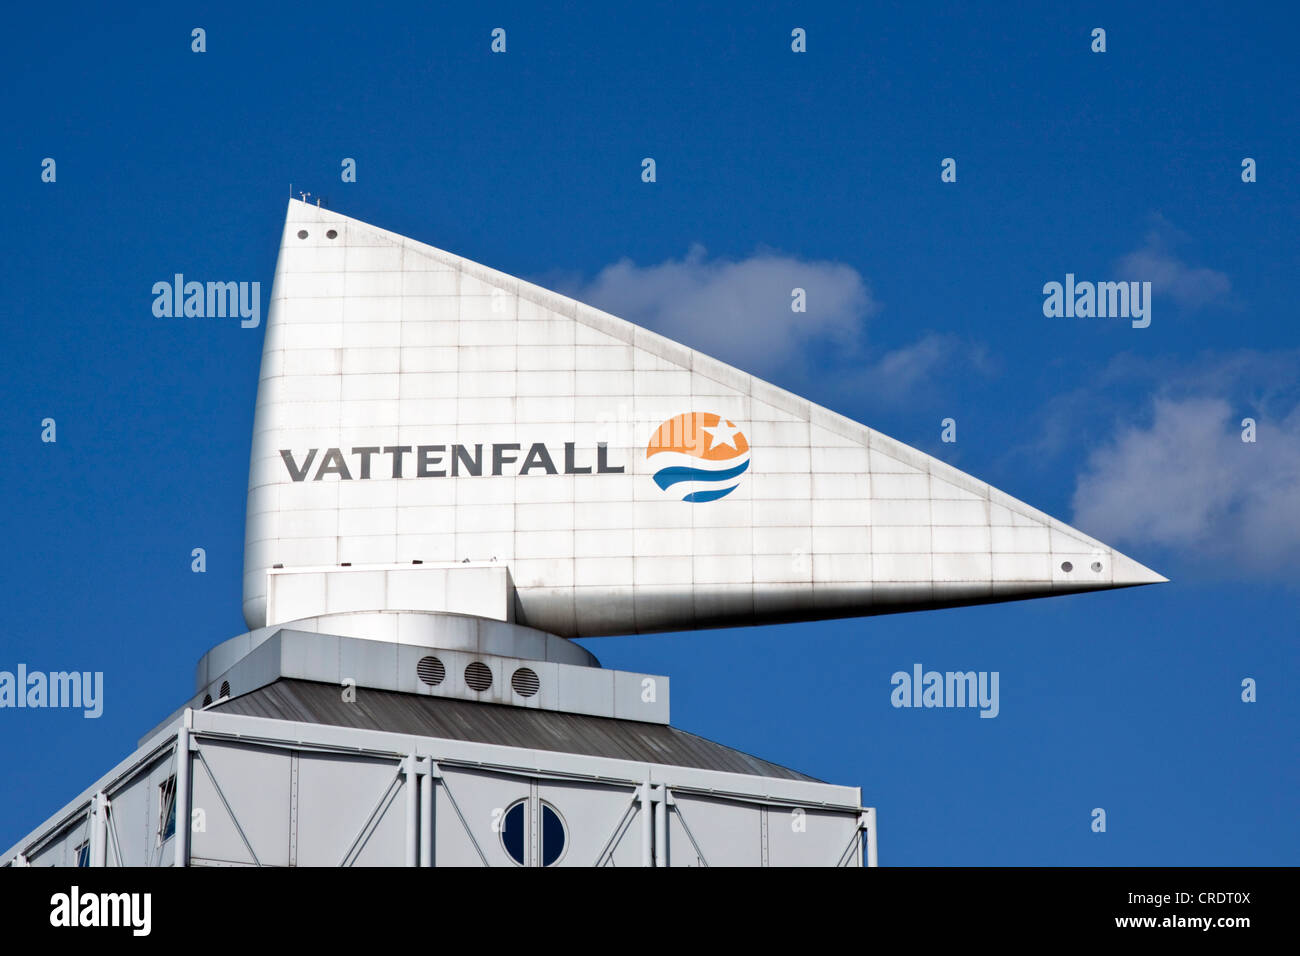 Vattenfall lettrage sur une construction à Berlin, Germany, Europe Banque D'Images